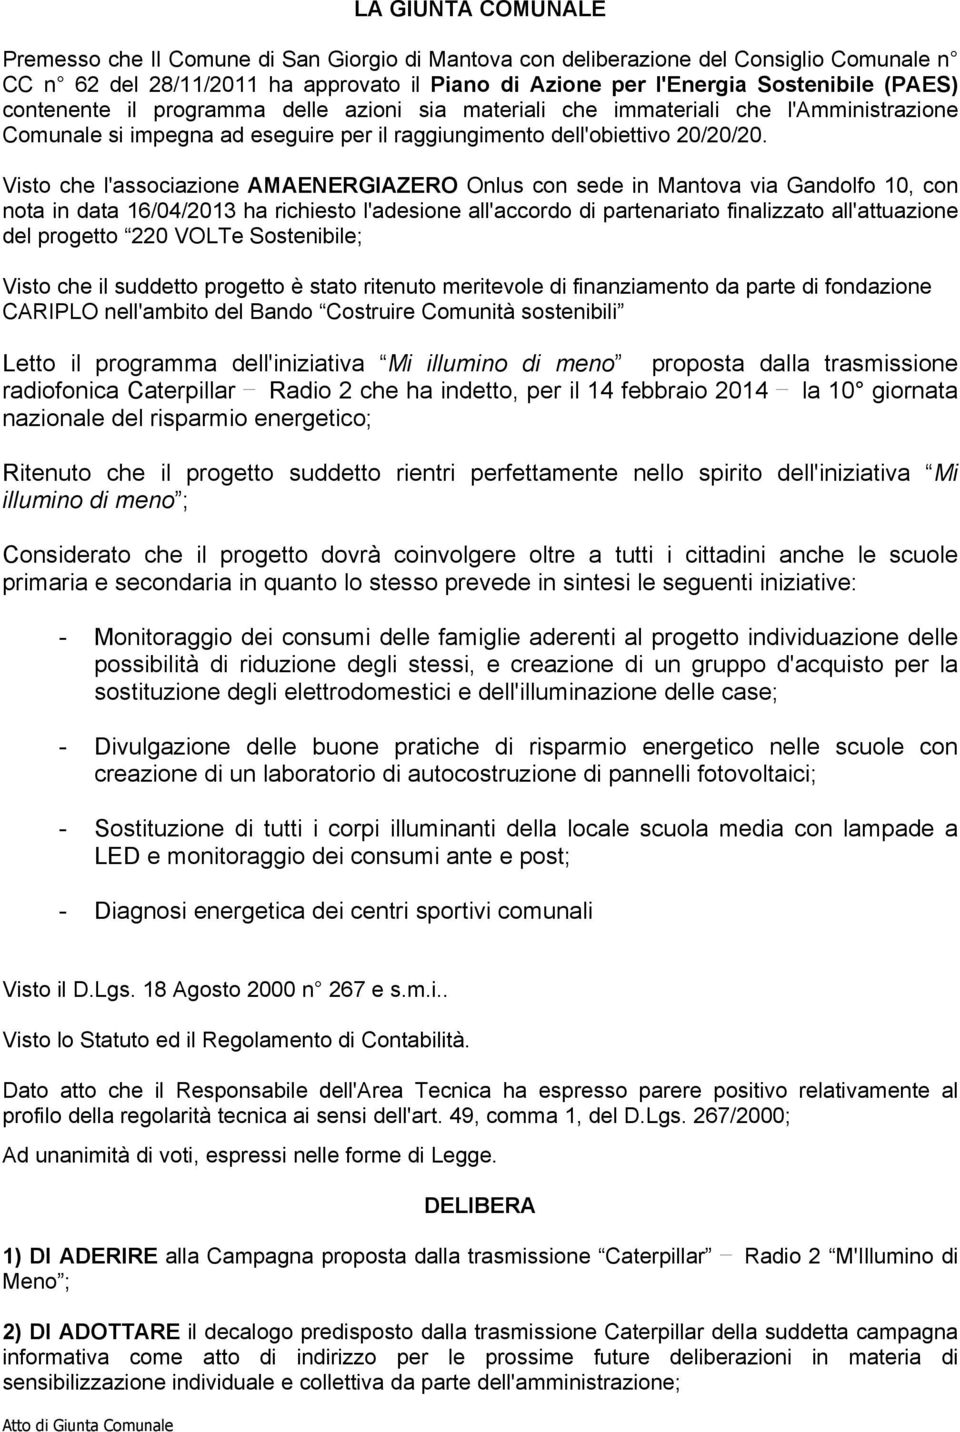 Visto che l'associazione AMAENERGIAZERO Onlus con sede in Mantova via Gandolfo 10, con nota in data 16/04/2013 ha richiesto l'adesione all'accordo di partenariato finalizzato all'attuazione del